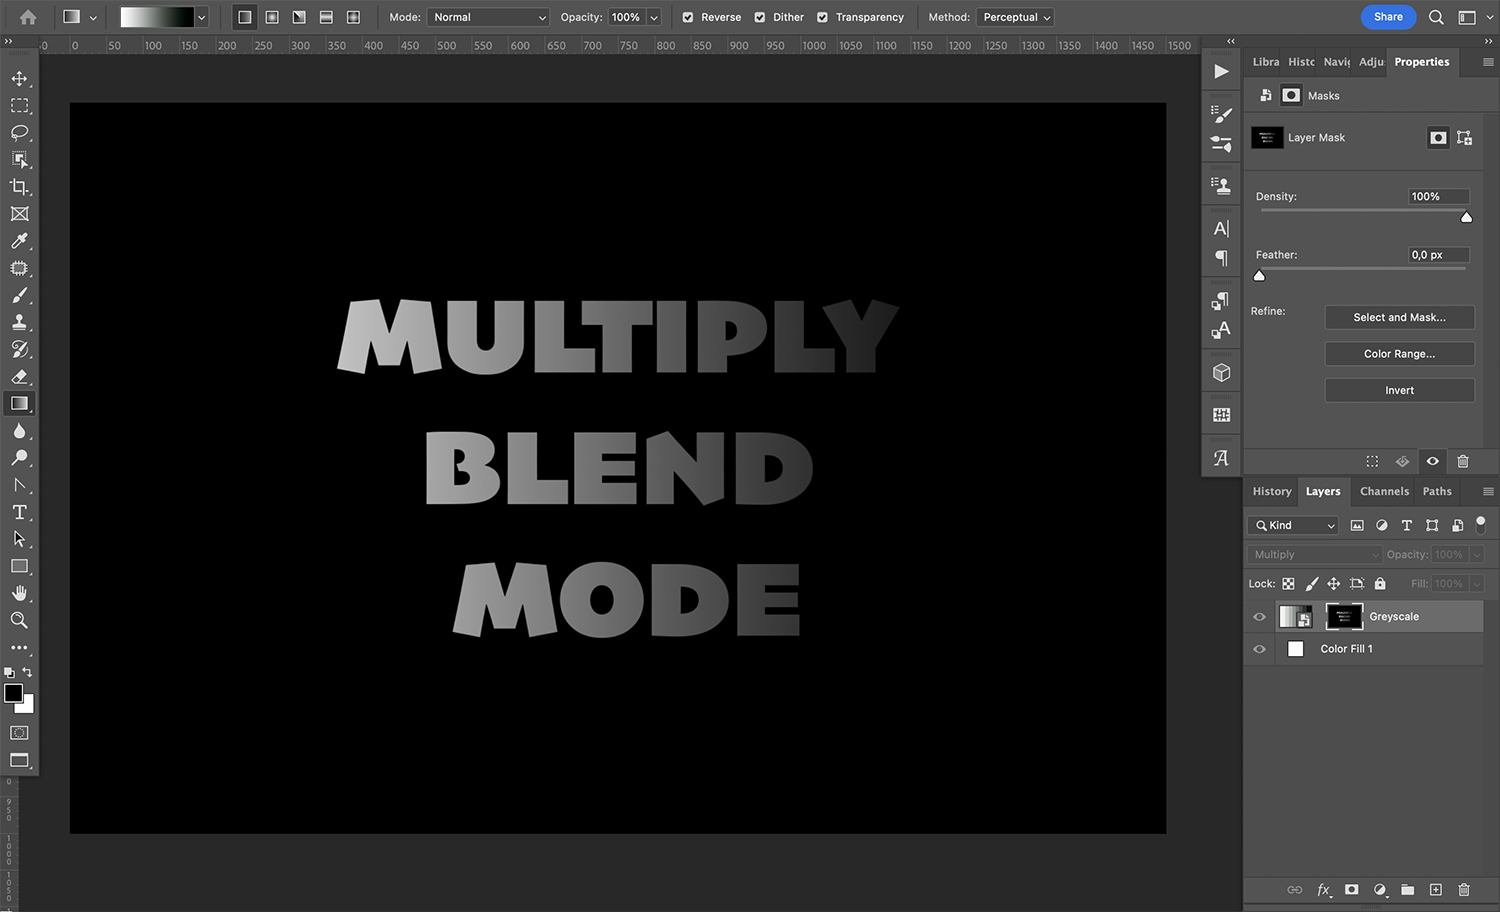 Multiply blend mode